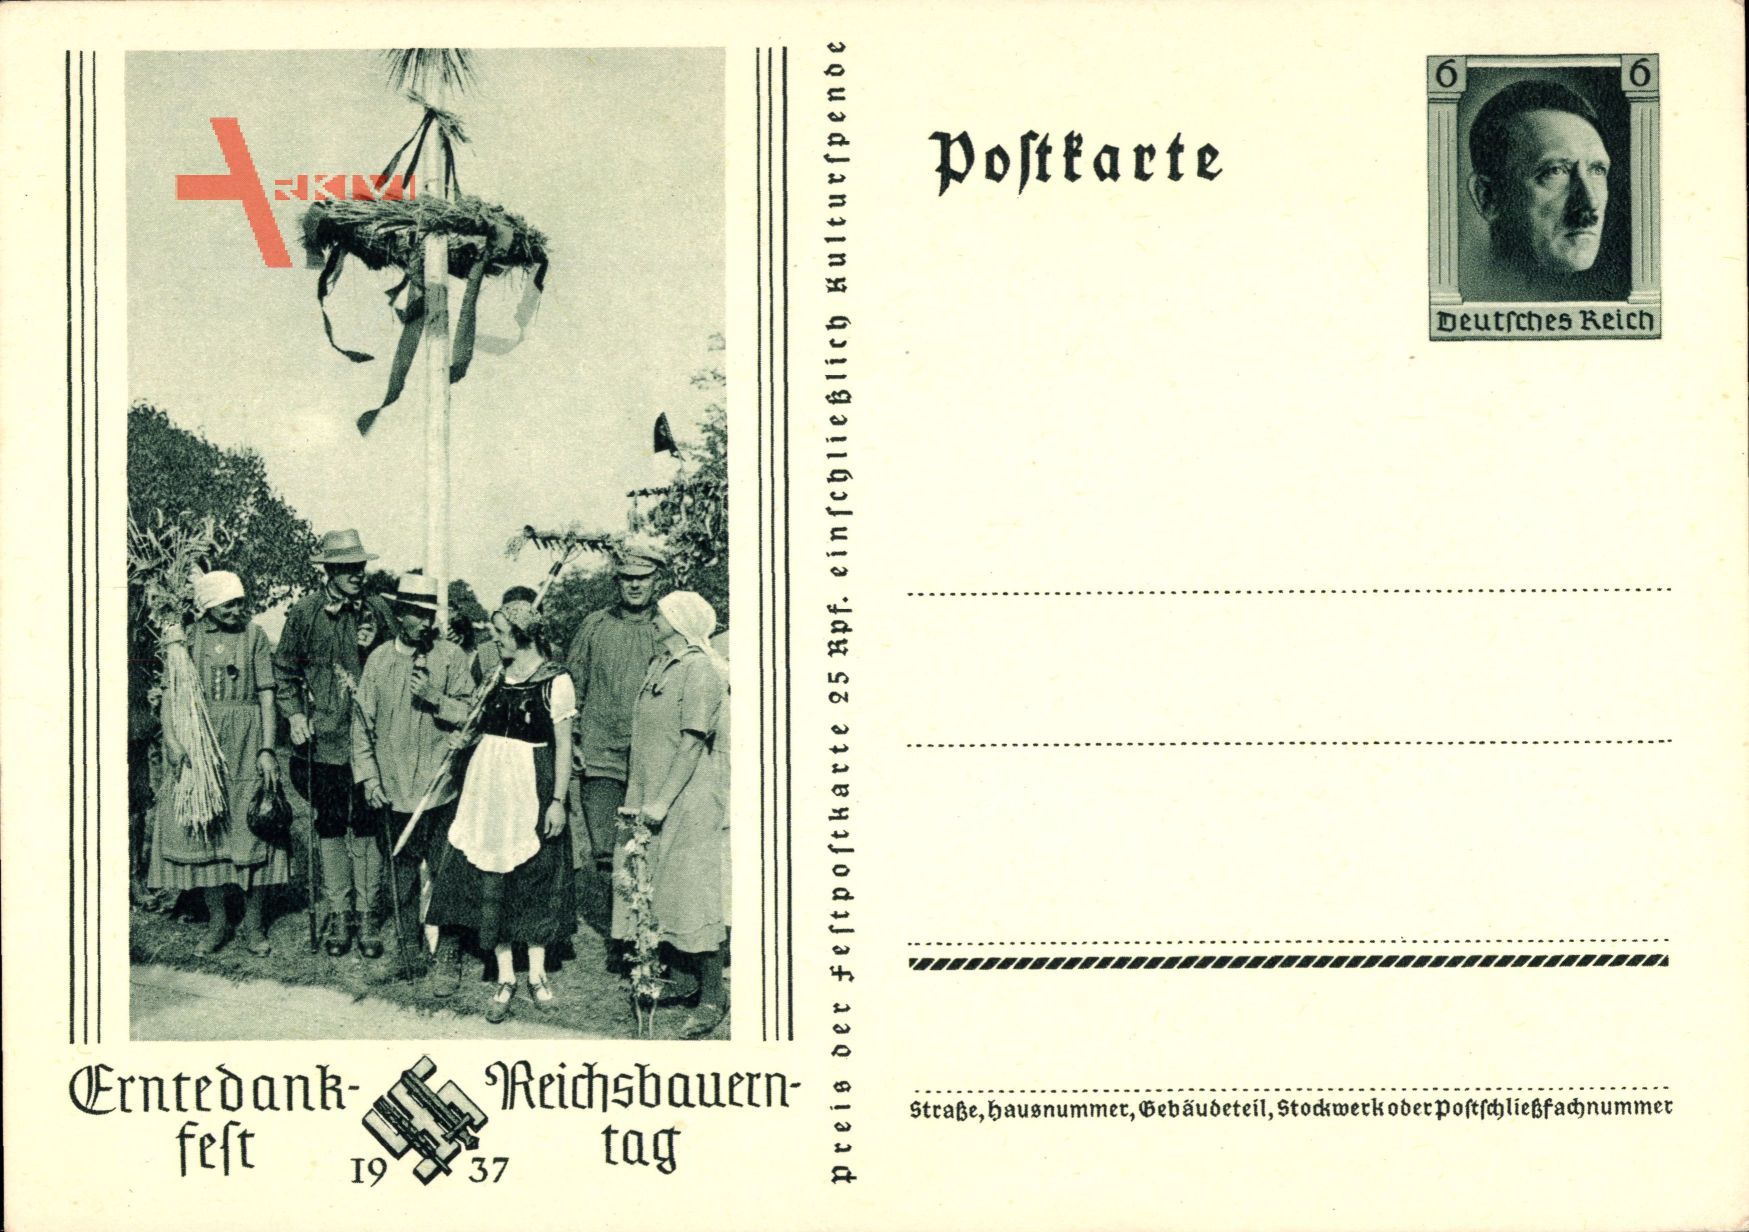 Erntedankfest, Reichsbauerntag 1937, III. Reich